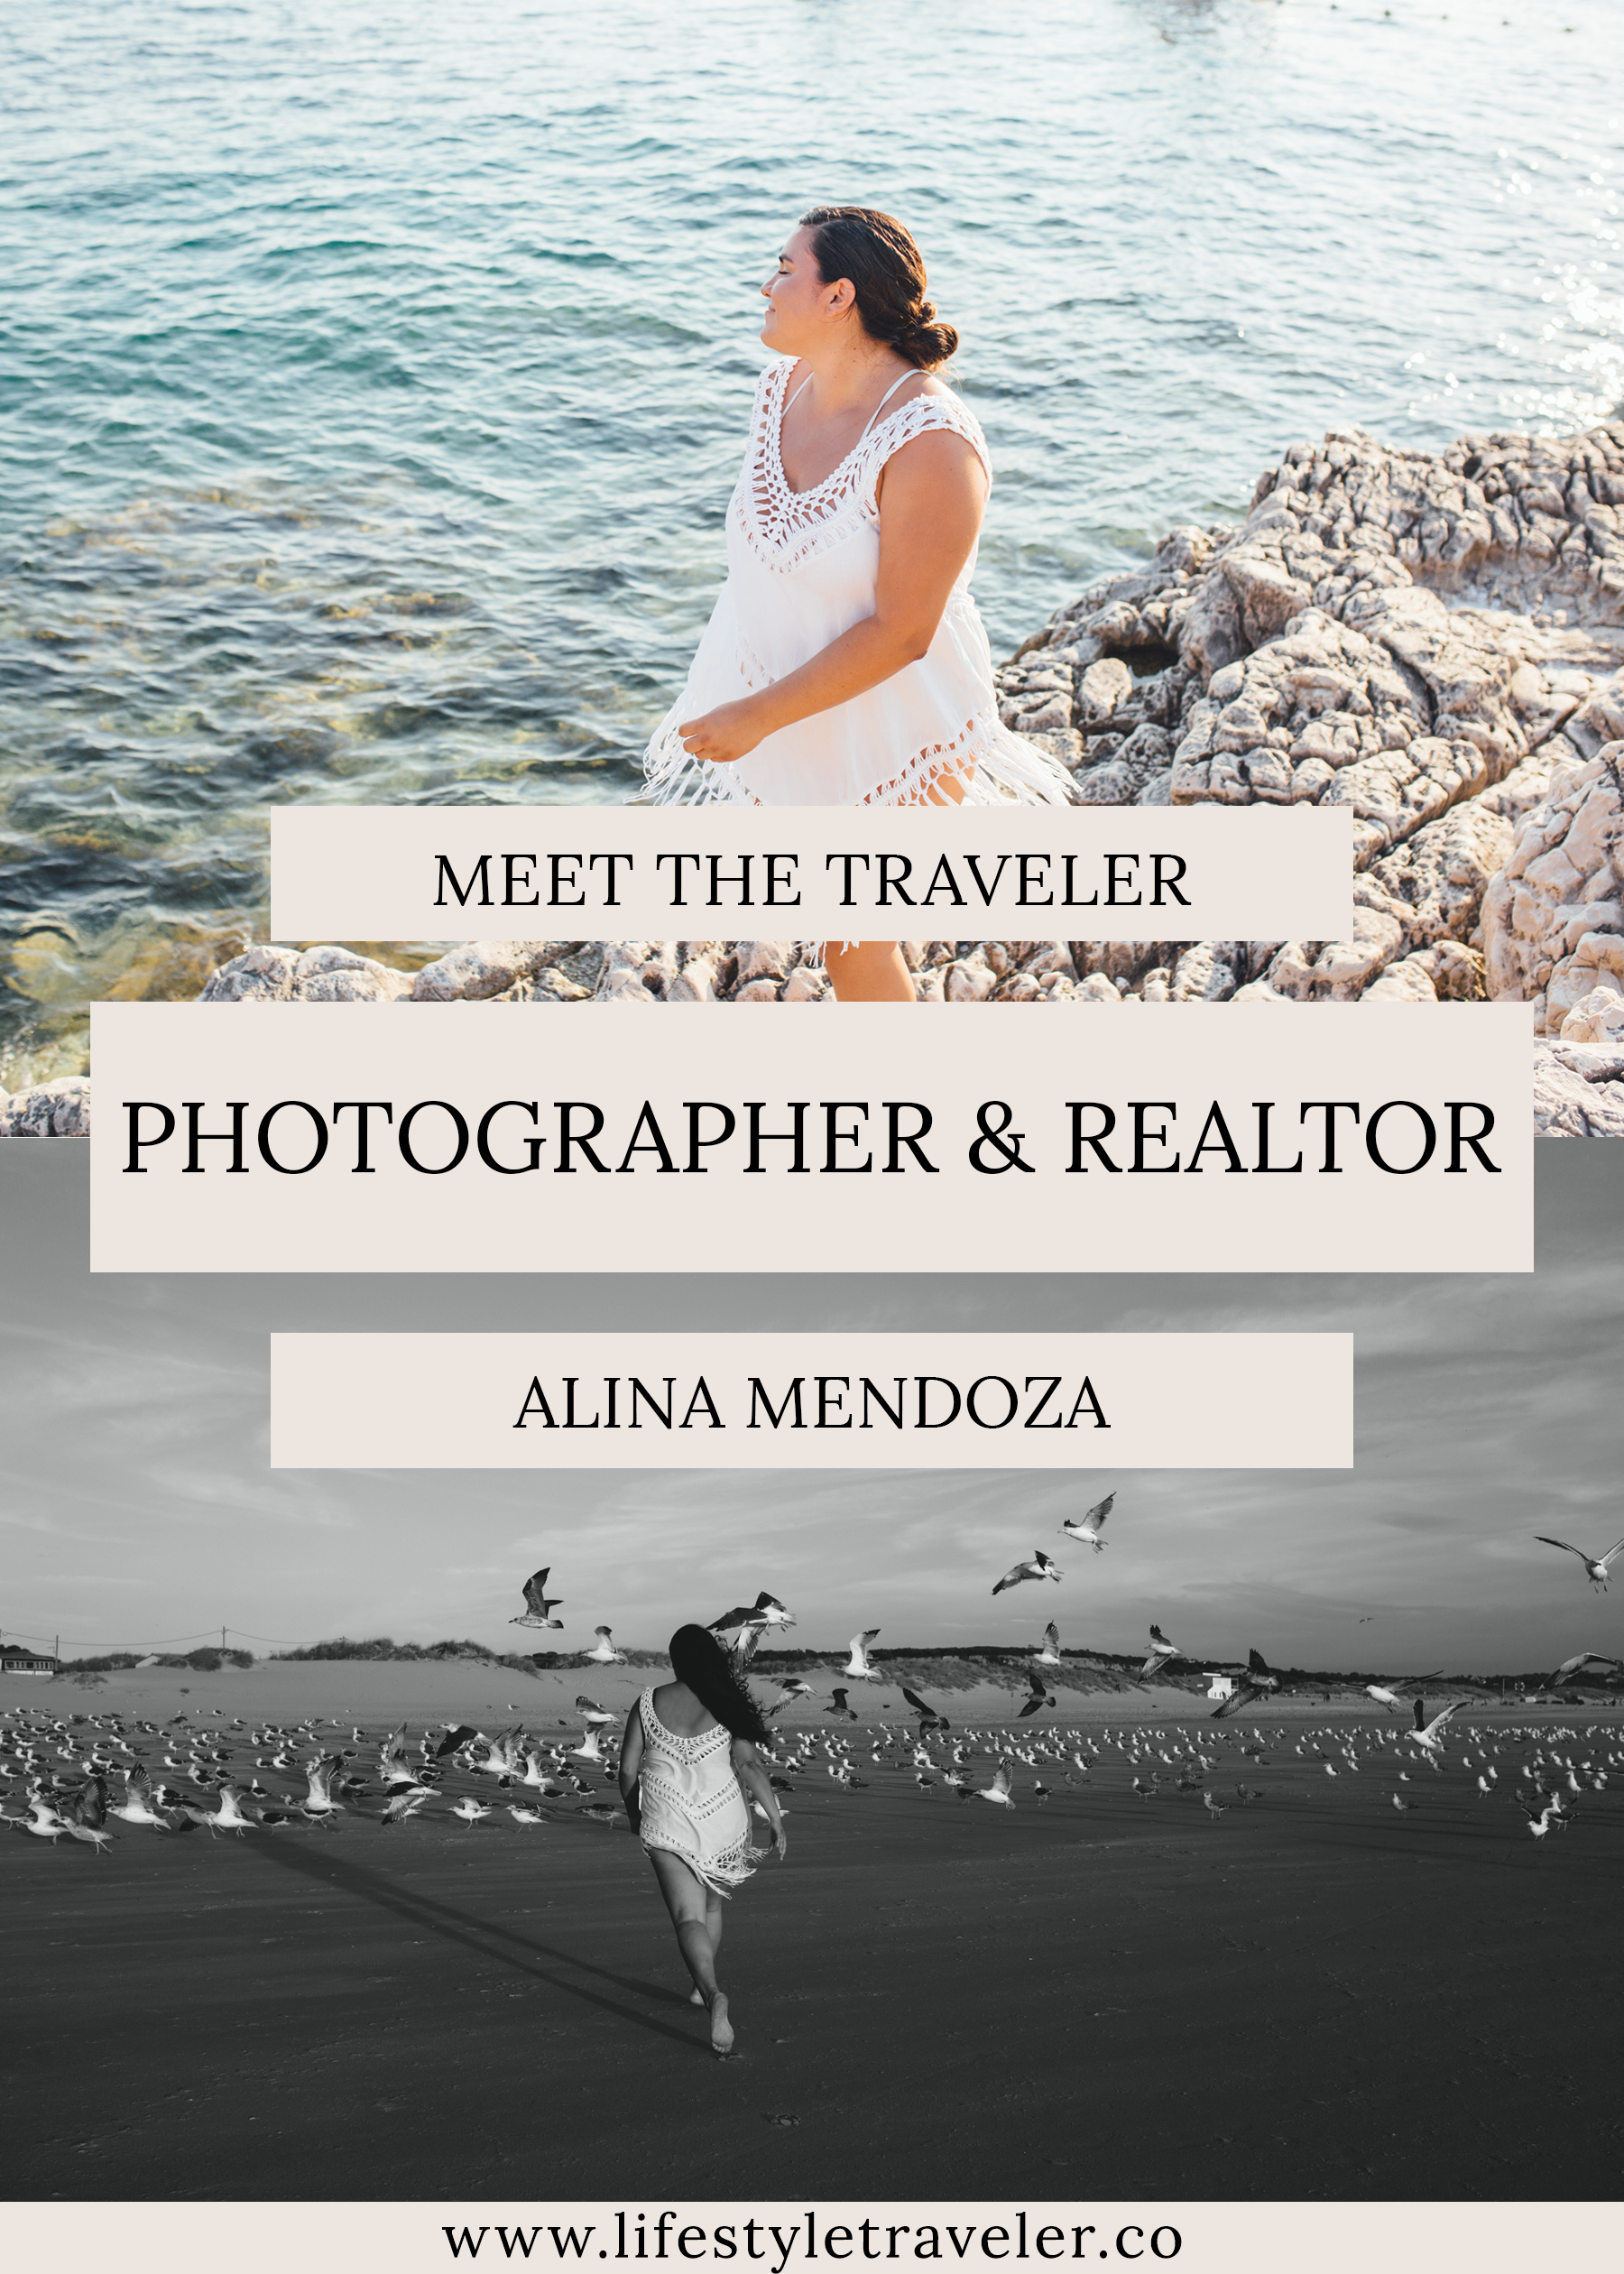 Meet The Traveler: Photographer & Realtor Alina Mendoza | lifestyletraveler.co | IG: @lifestyletraveler.co | Photo by: Alina Mendoza